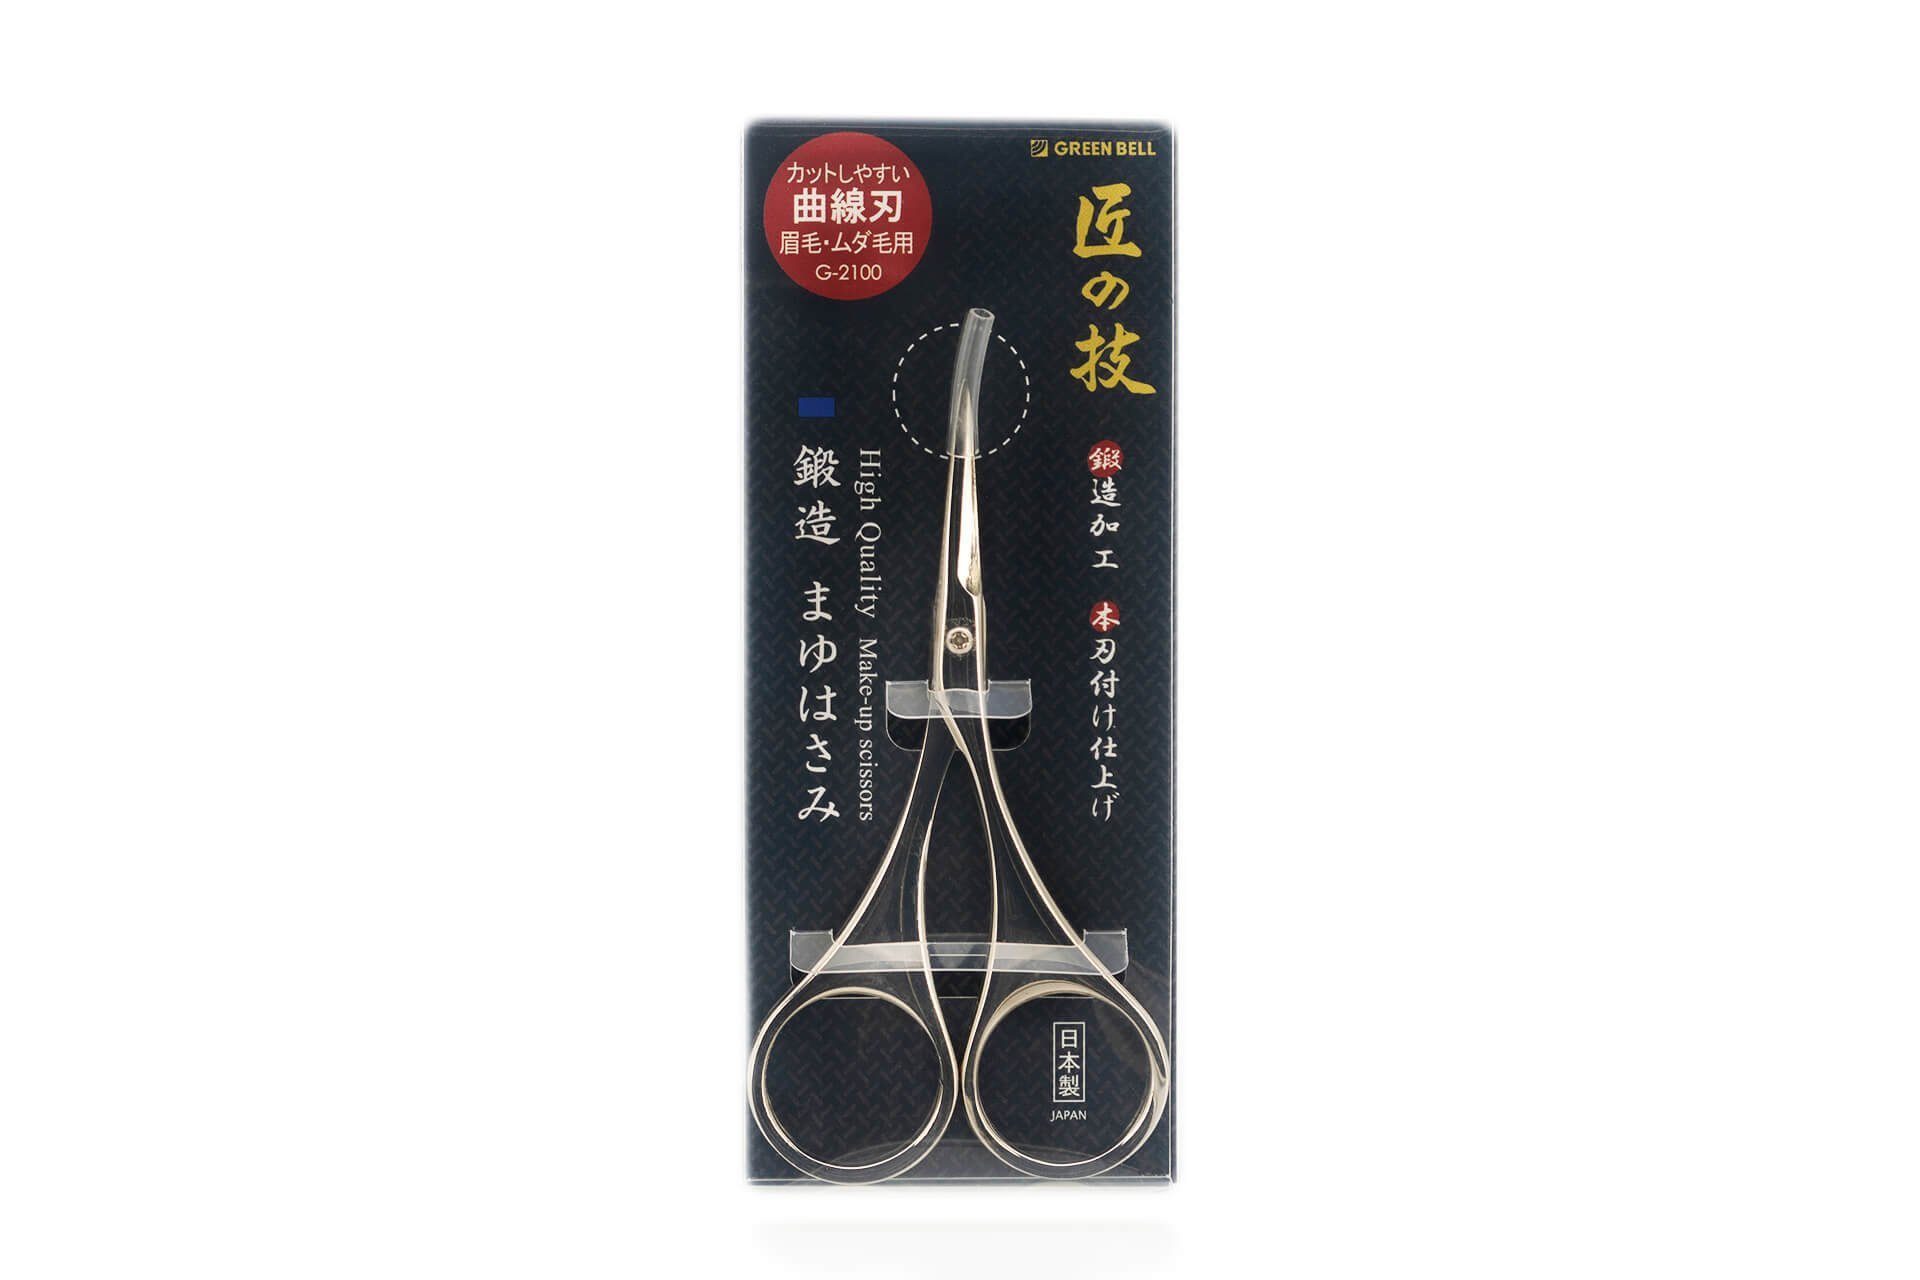 EDGE 9.3x5x0.8 aus Qualitätsprodukt handgeschärftes geschmiedet cm, Augenbrauenschere Japan Augenbrauenschere Seki G-2100